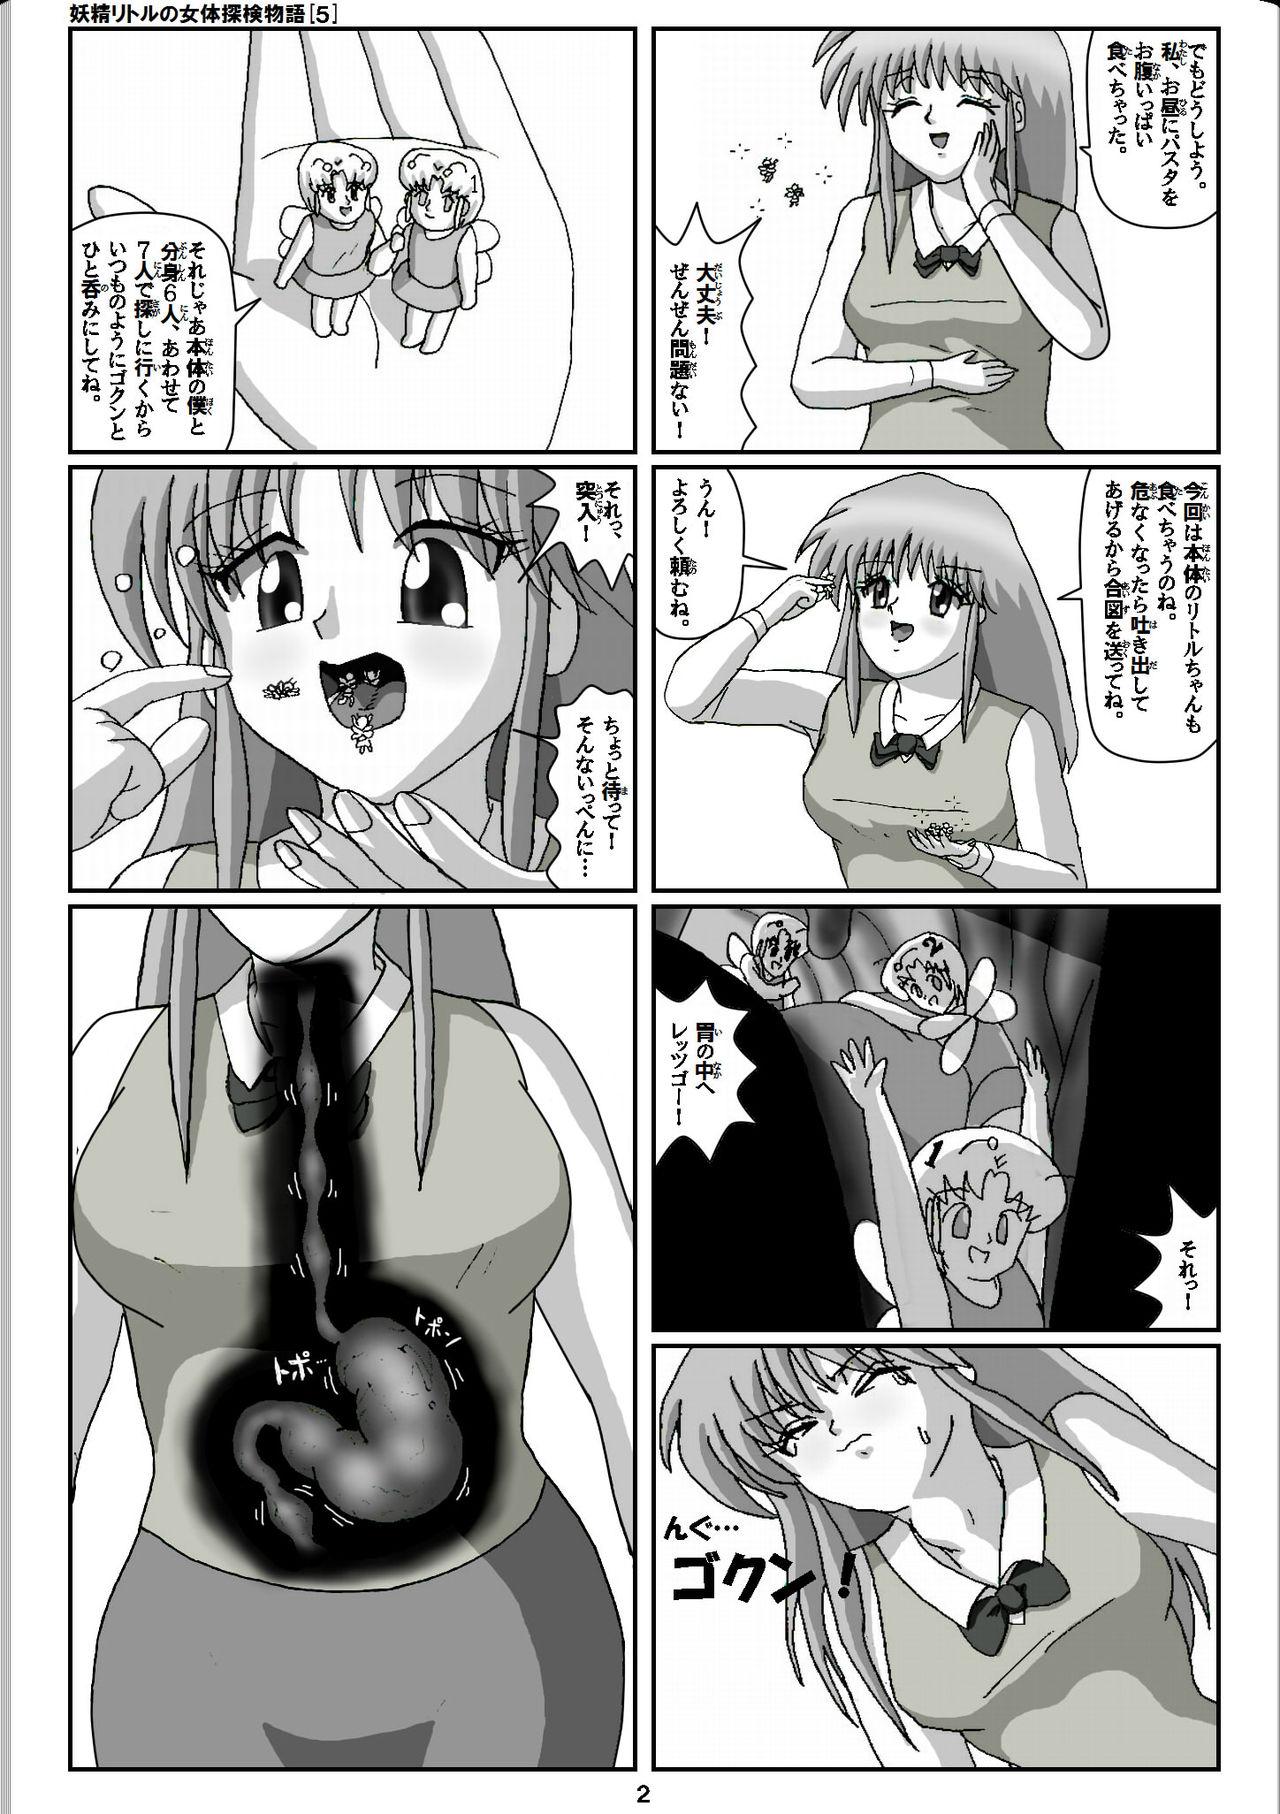 Sofa Yousei Little no Nyotai Tanken Monogatari - Original Tan - Page 2